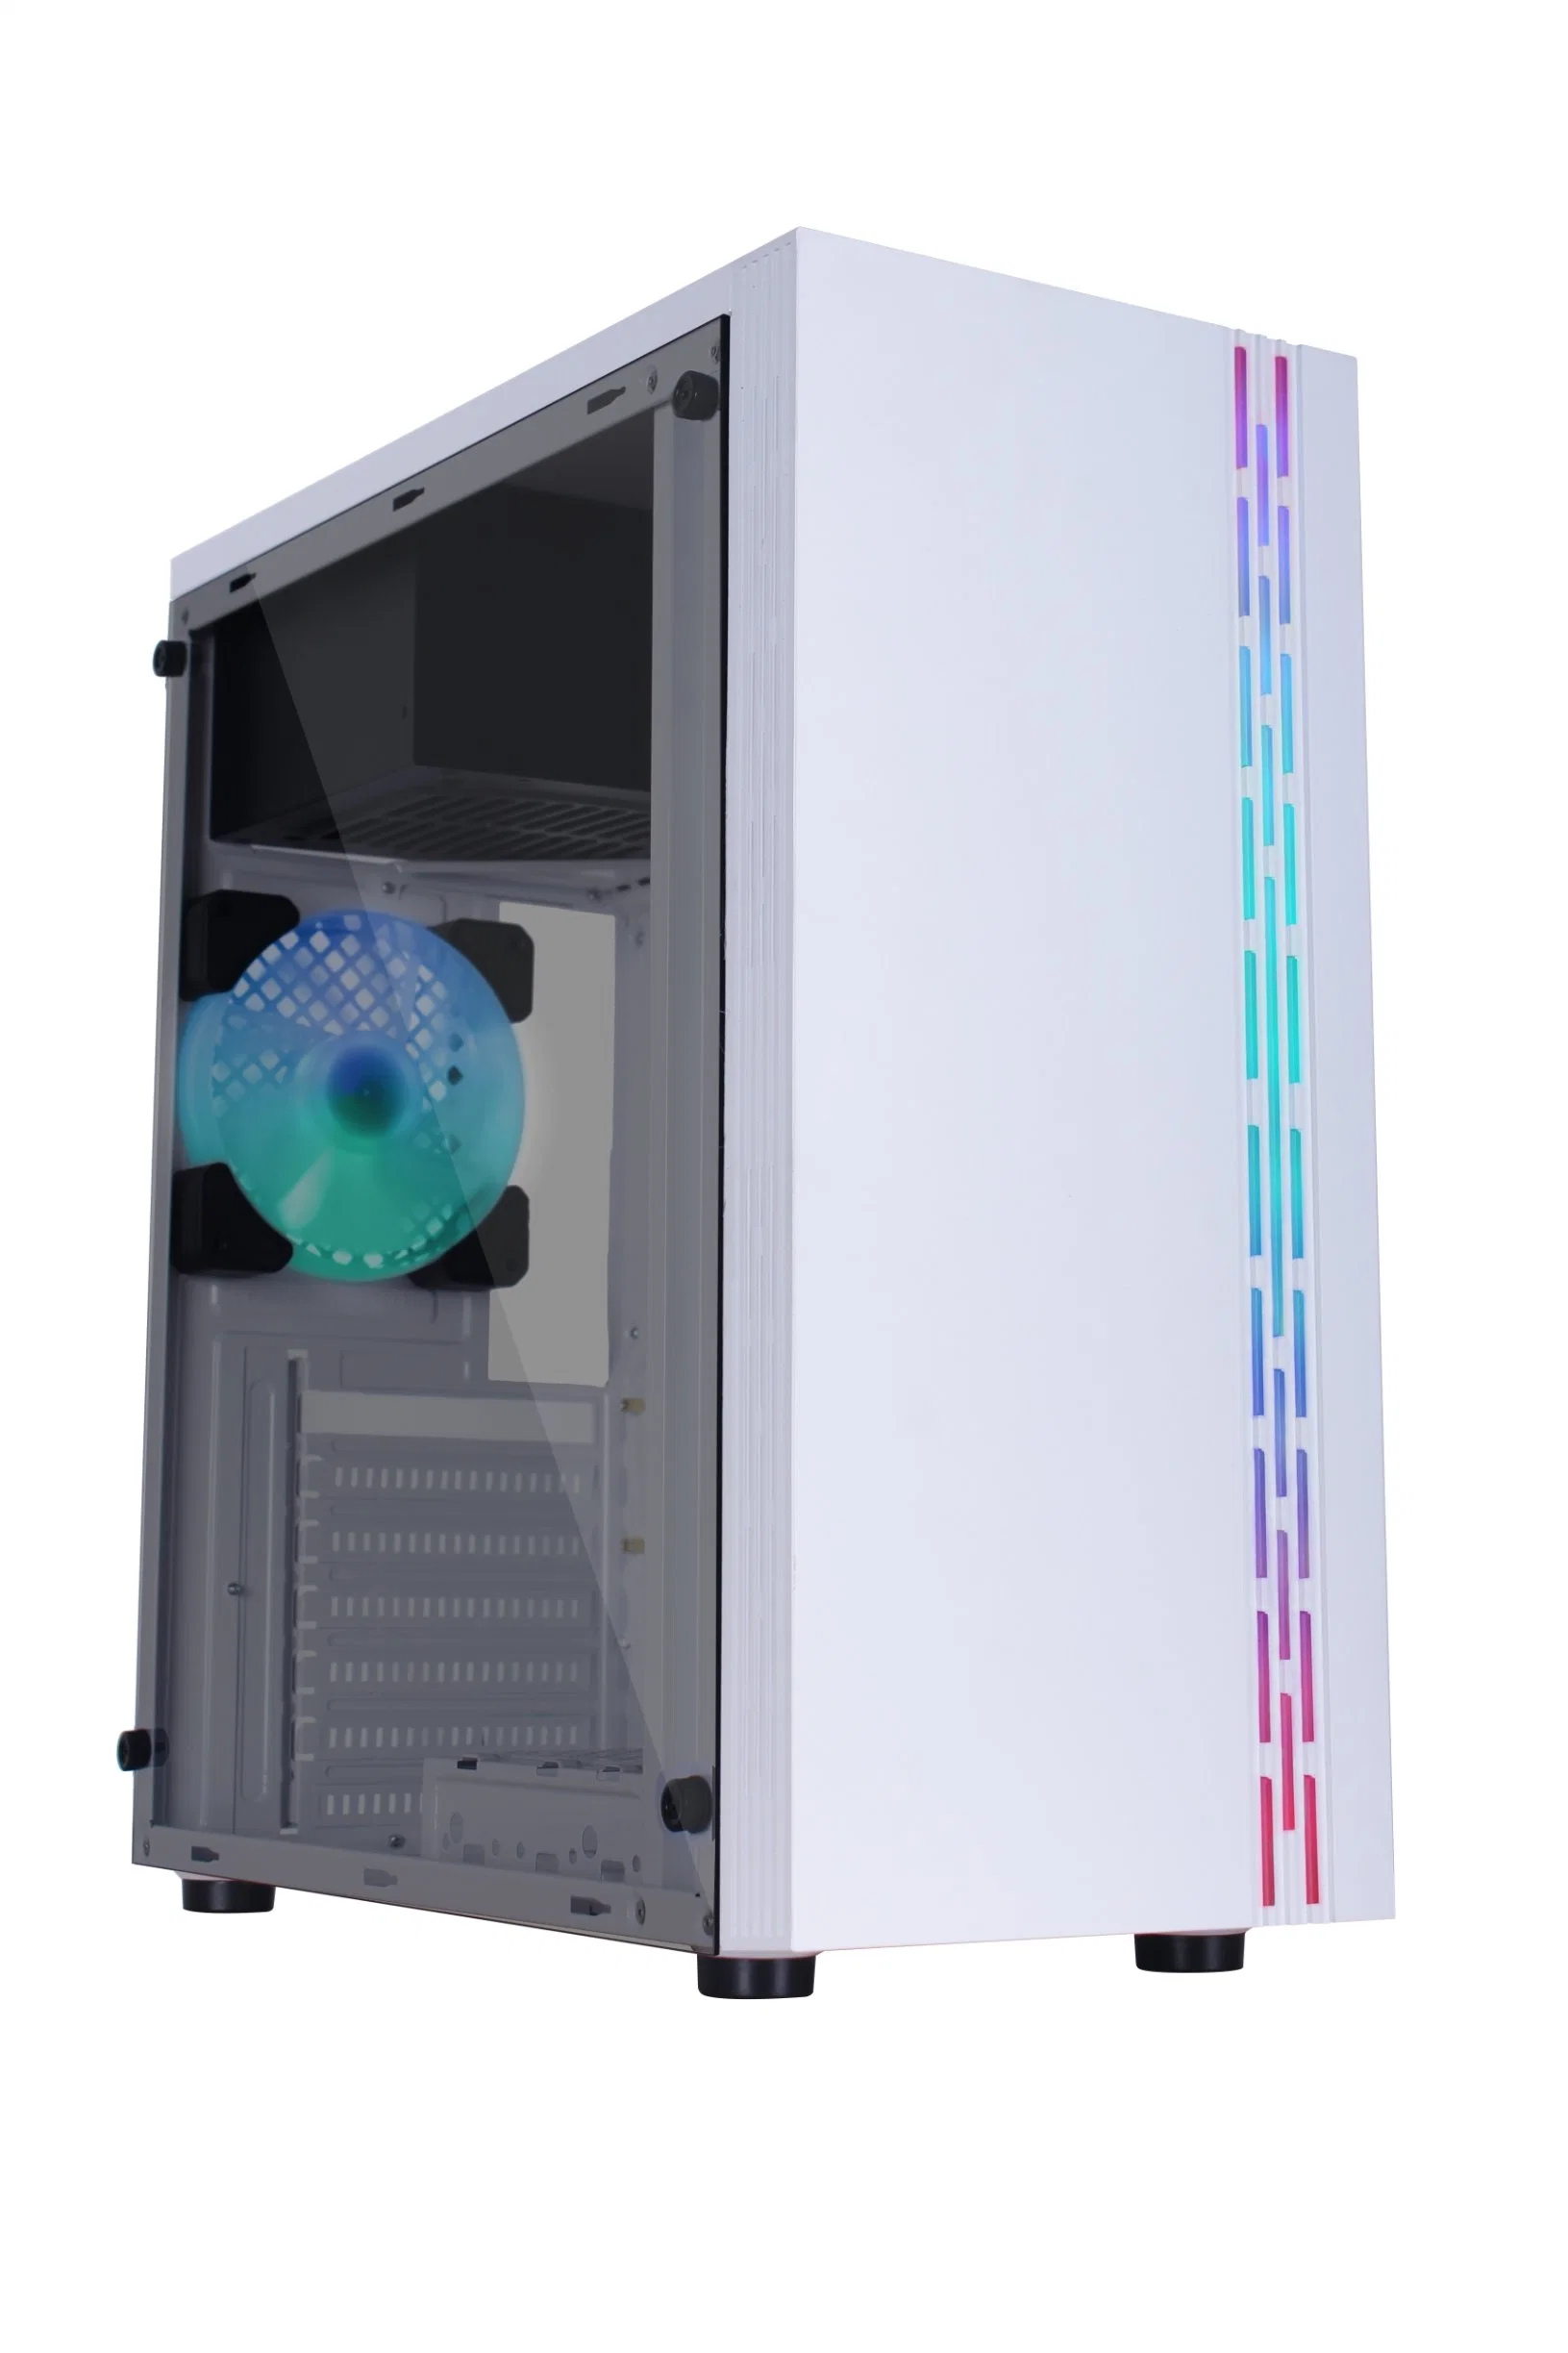 Spiele Liebhaber ATX PC Tower Computer Case mit schönen Shining LED-Streifen